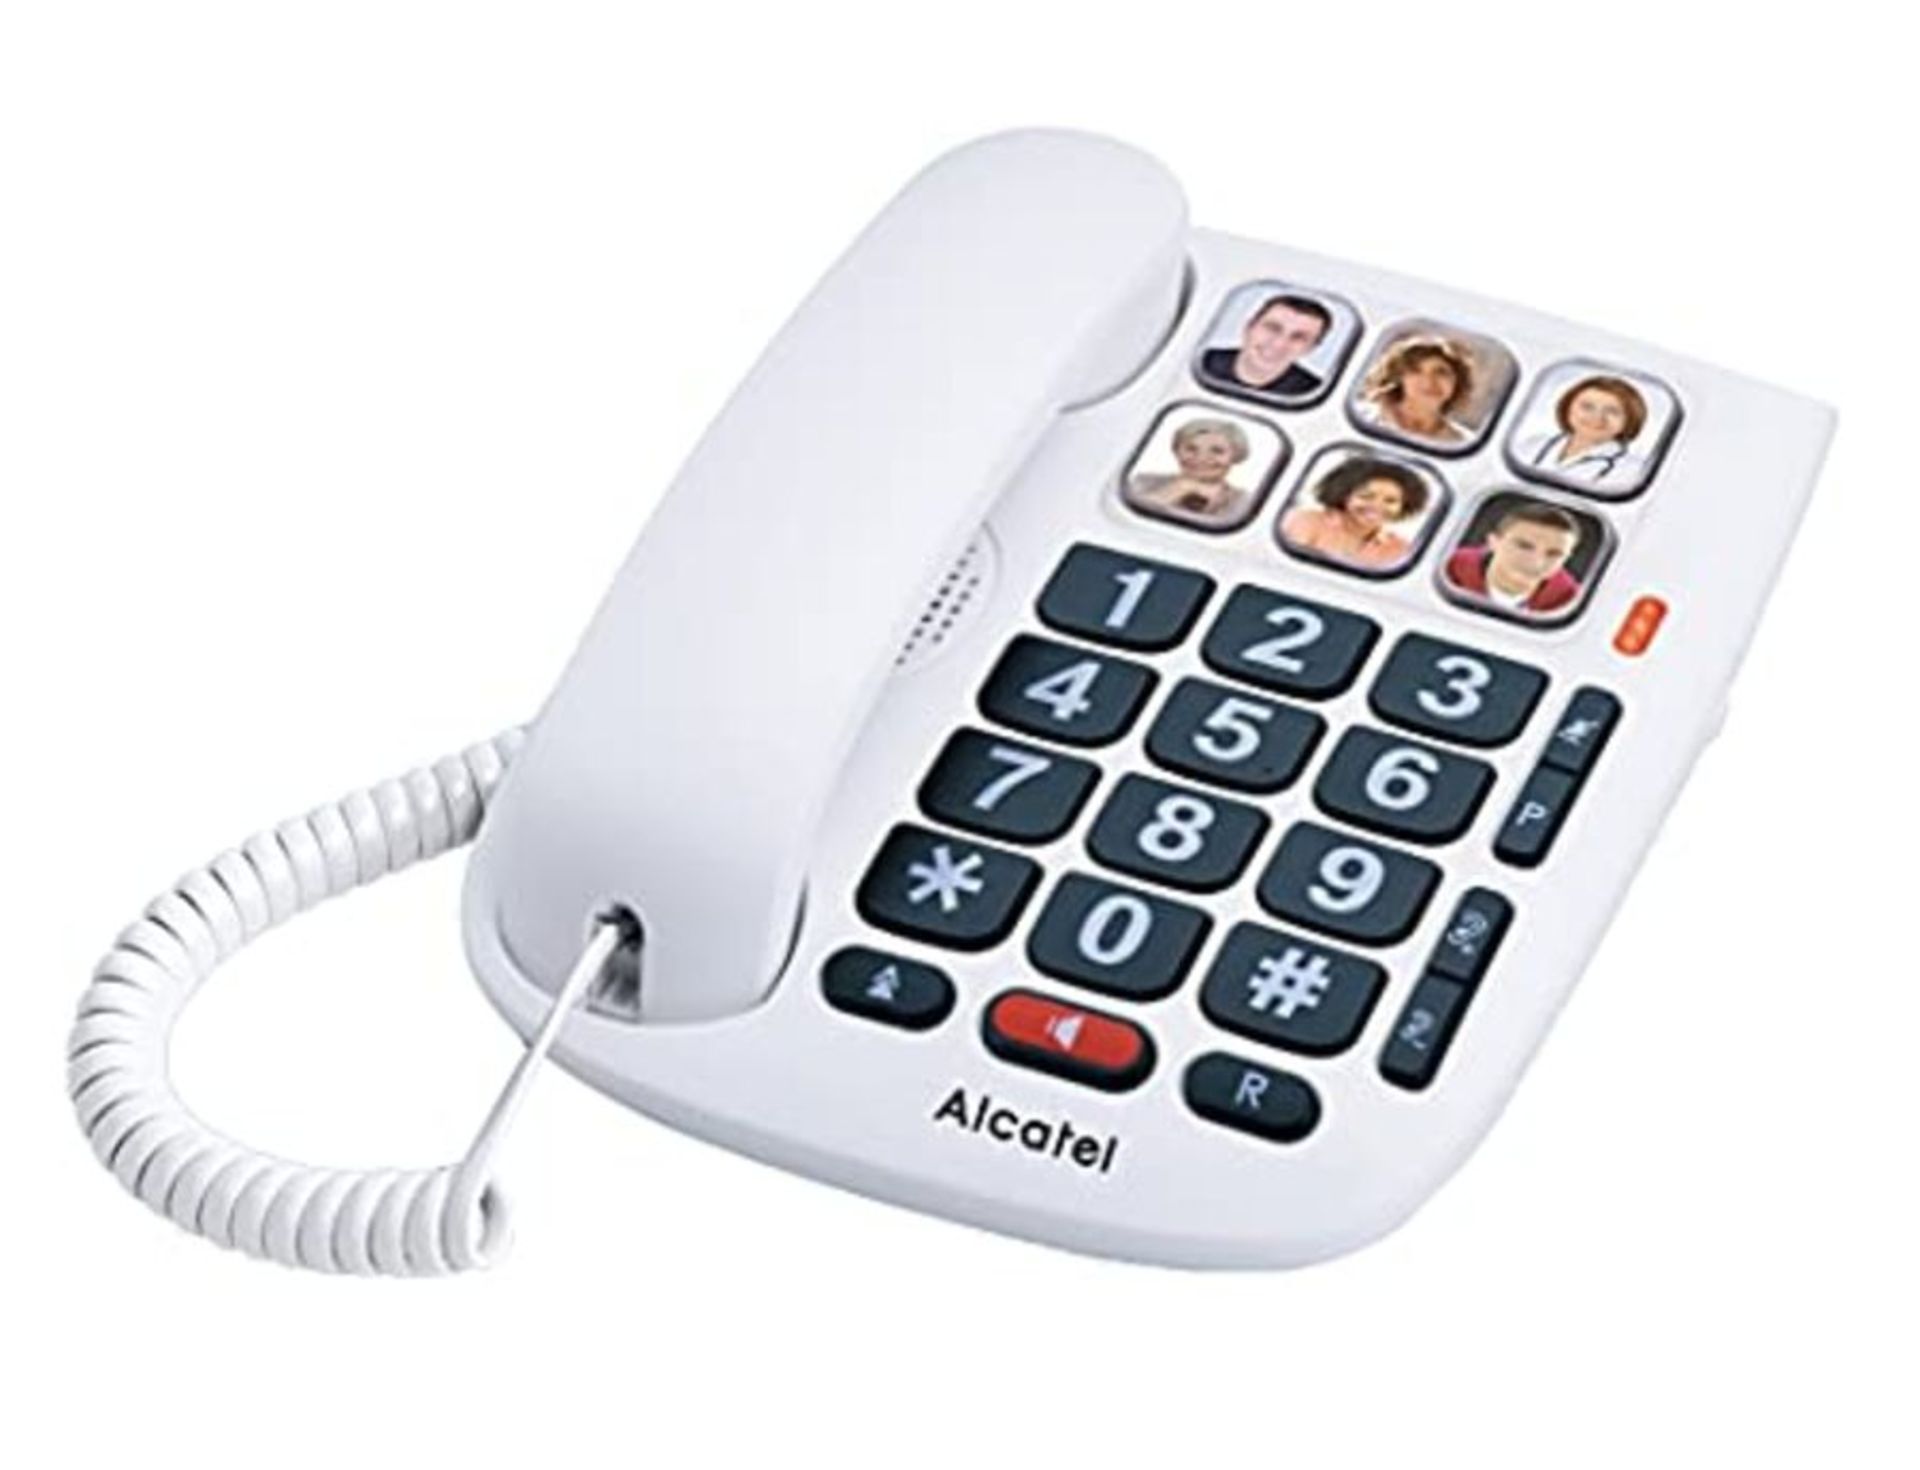 Alcatel TMAX 10 - T??l??phone Filaire Larges Touches pour Les s??niors, 6 Photos